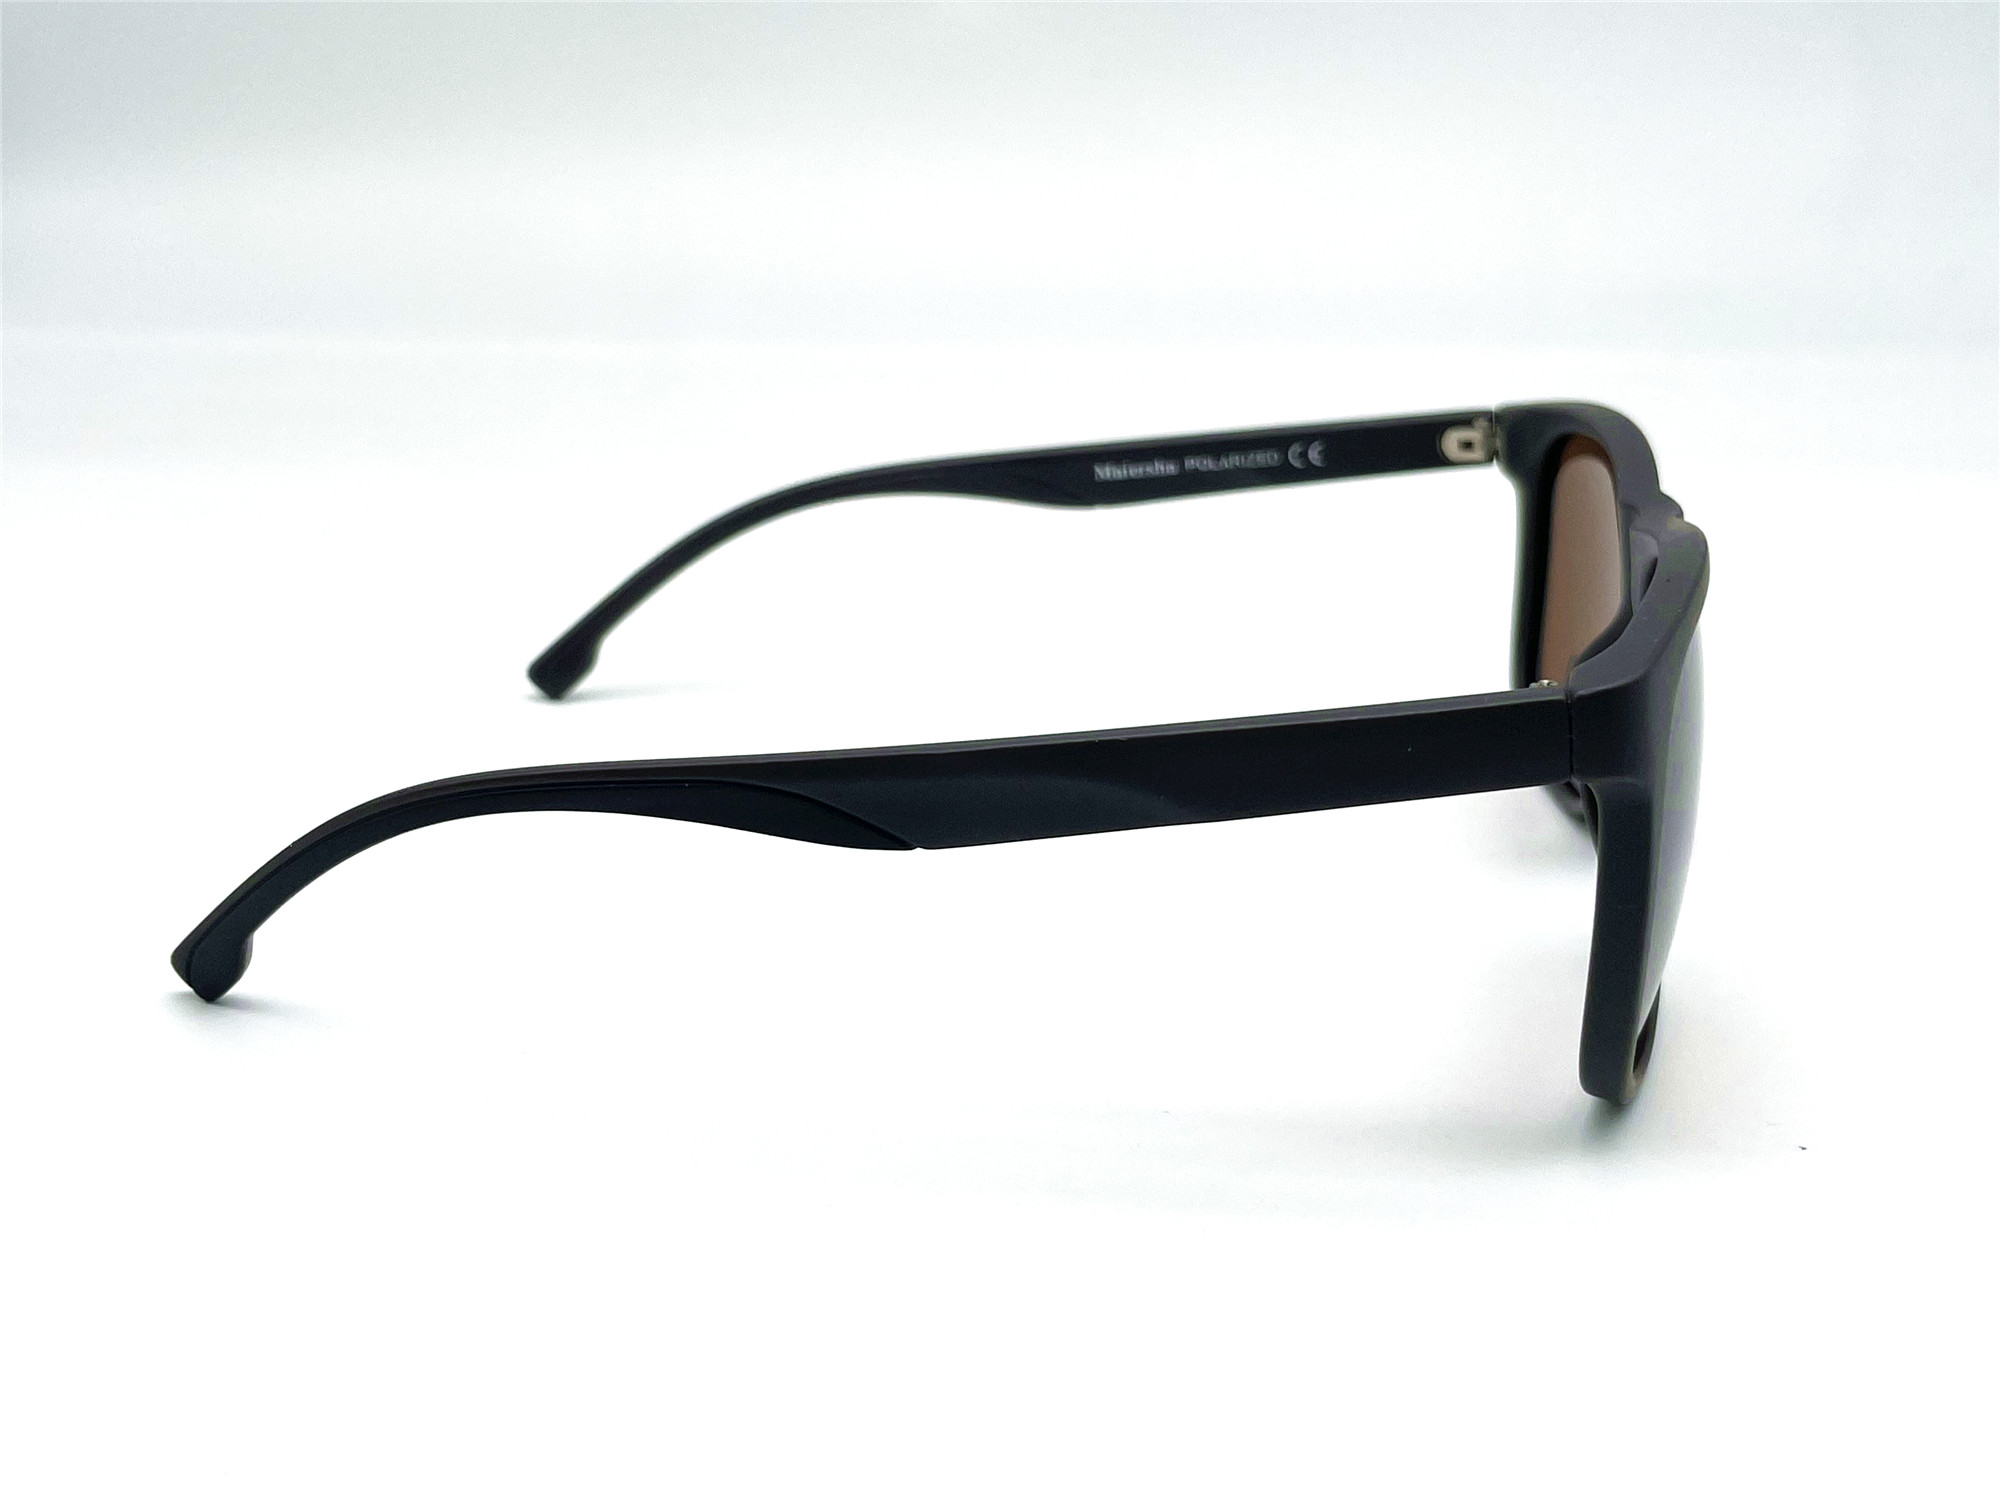  Солнцезащитные очки картинка Мужские Maiersha Polarized Стандартные P5056-C3 